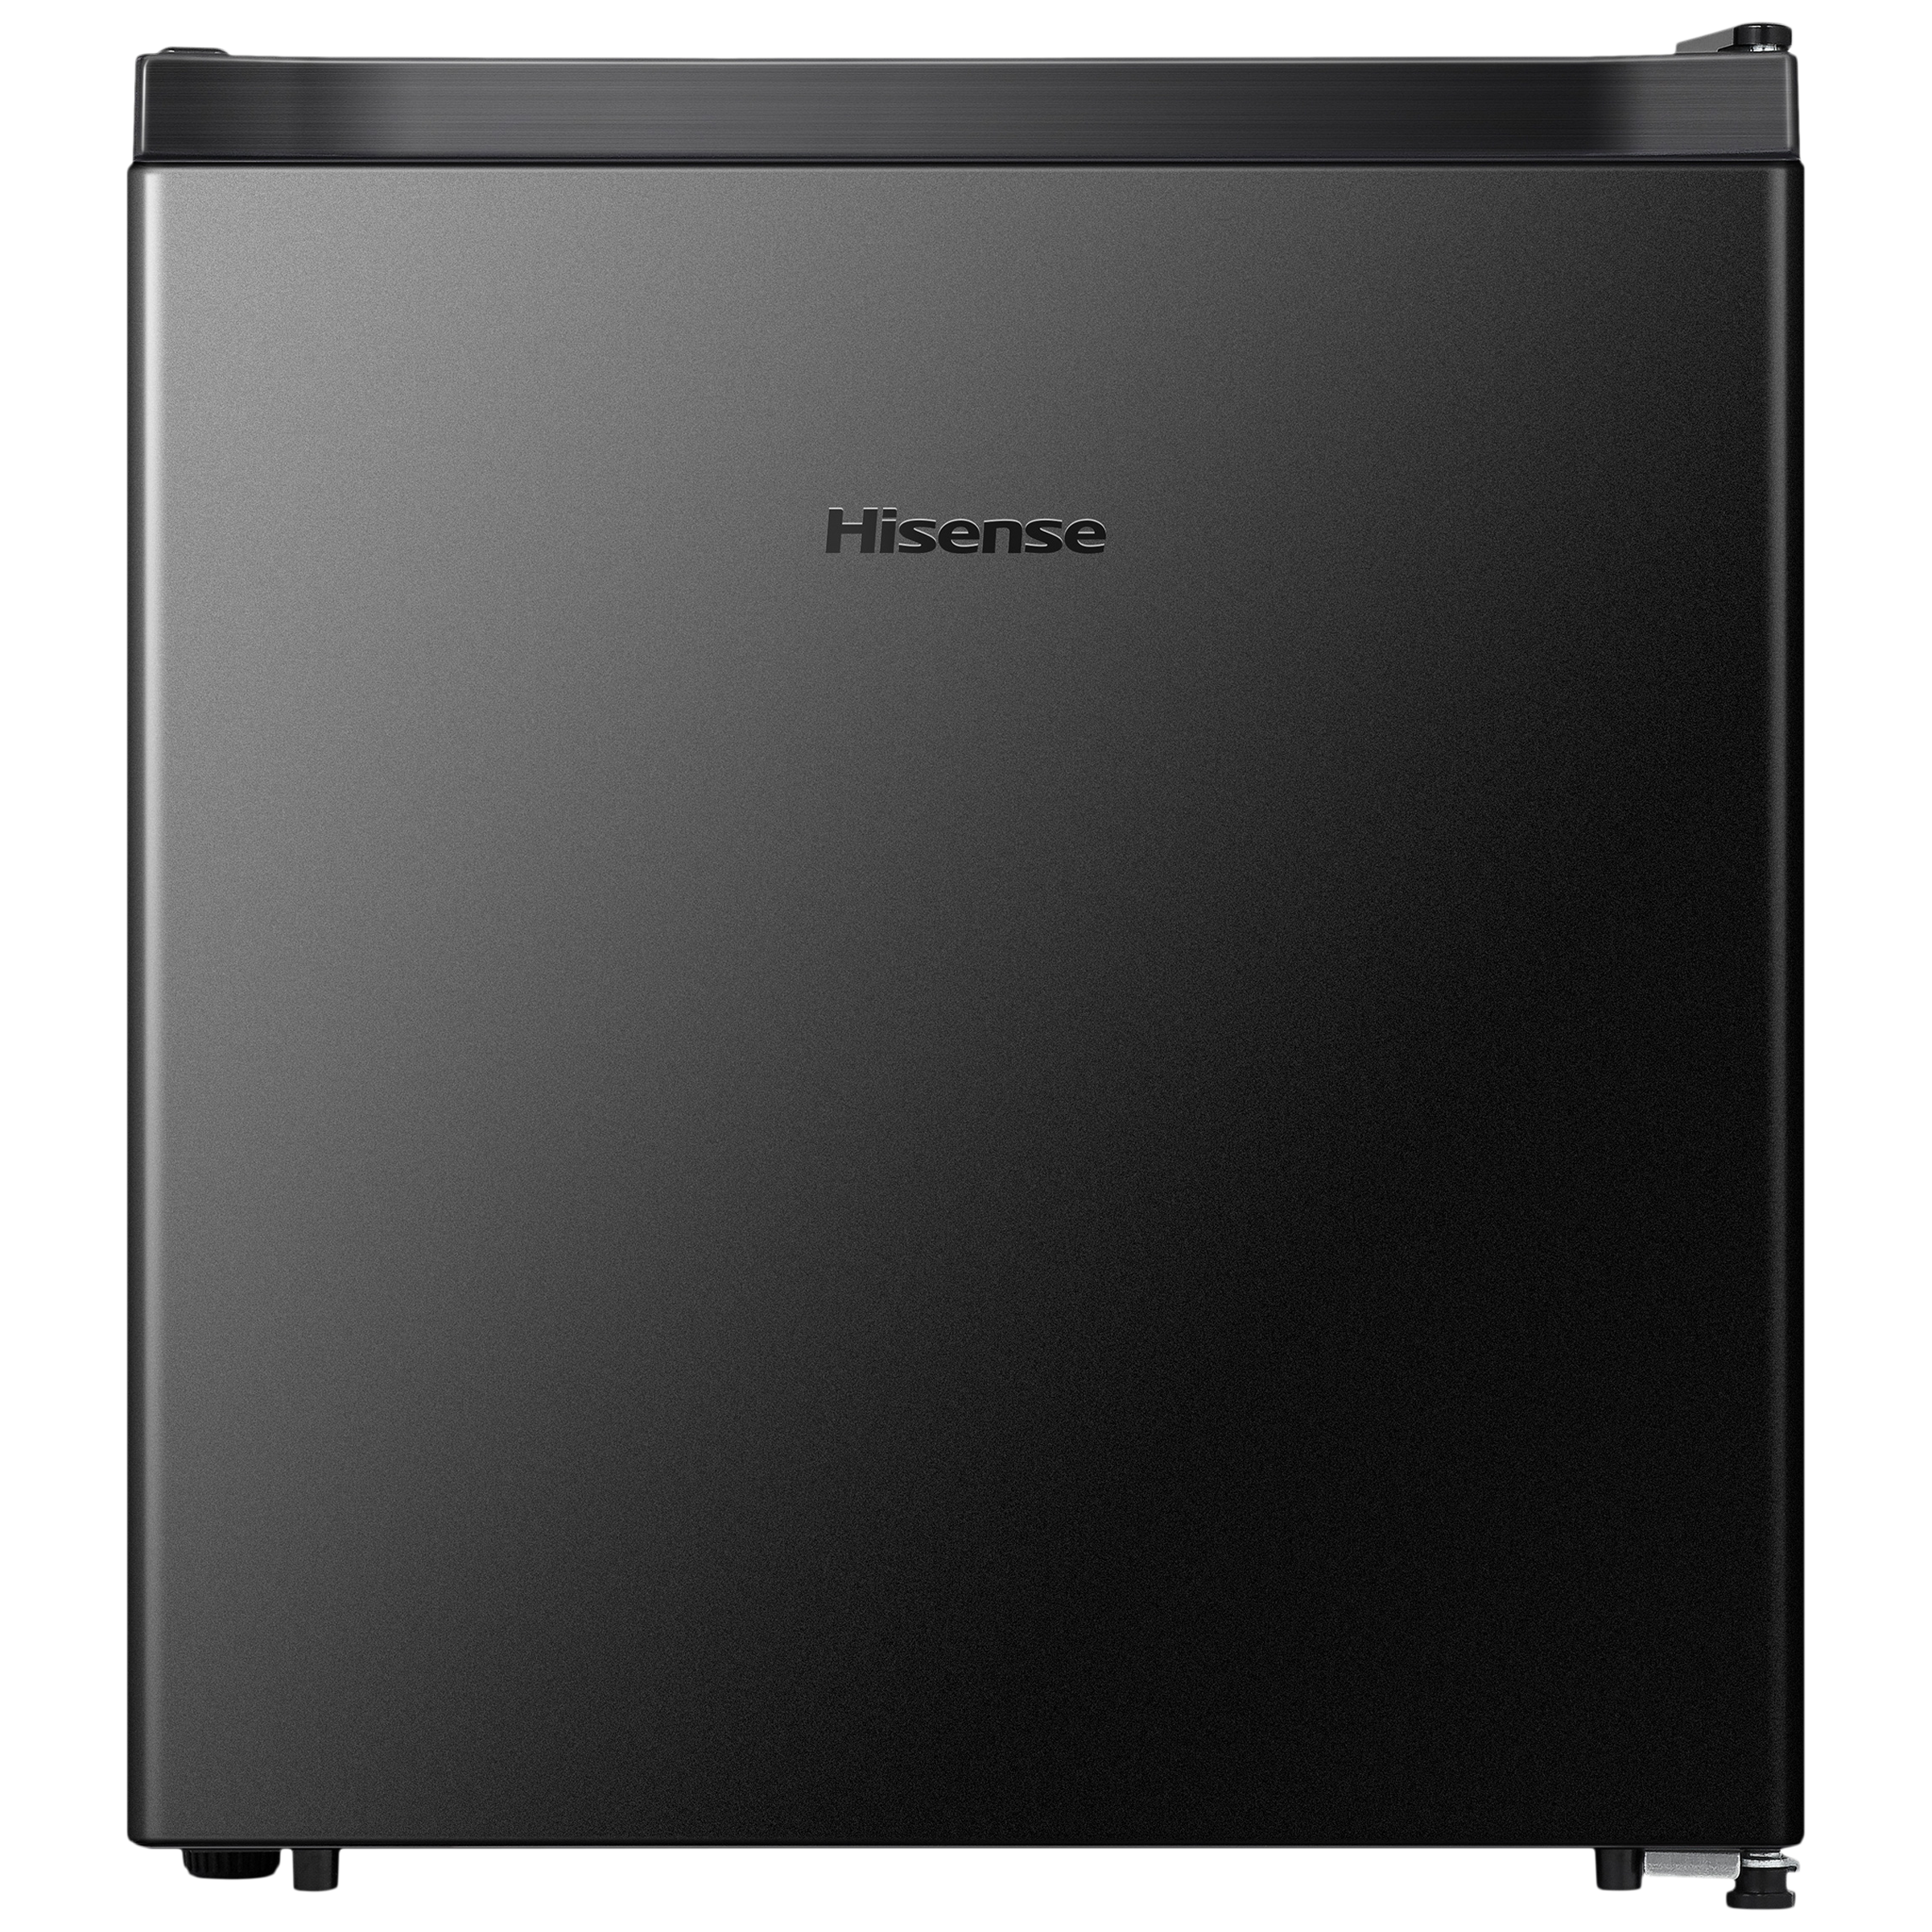 Hisense 46 Liters 2 Star Direct Cool Single Door Refrigerator with Reversible Door (RR46D4SBN, Black)_1